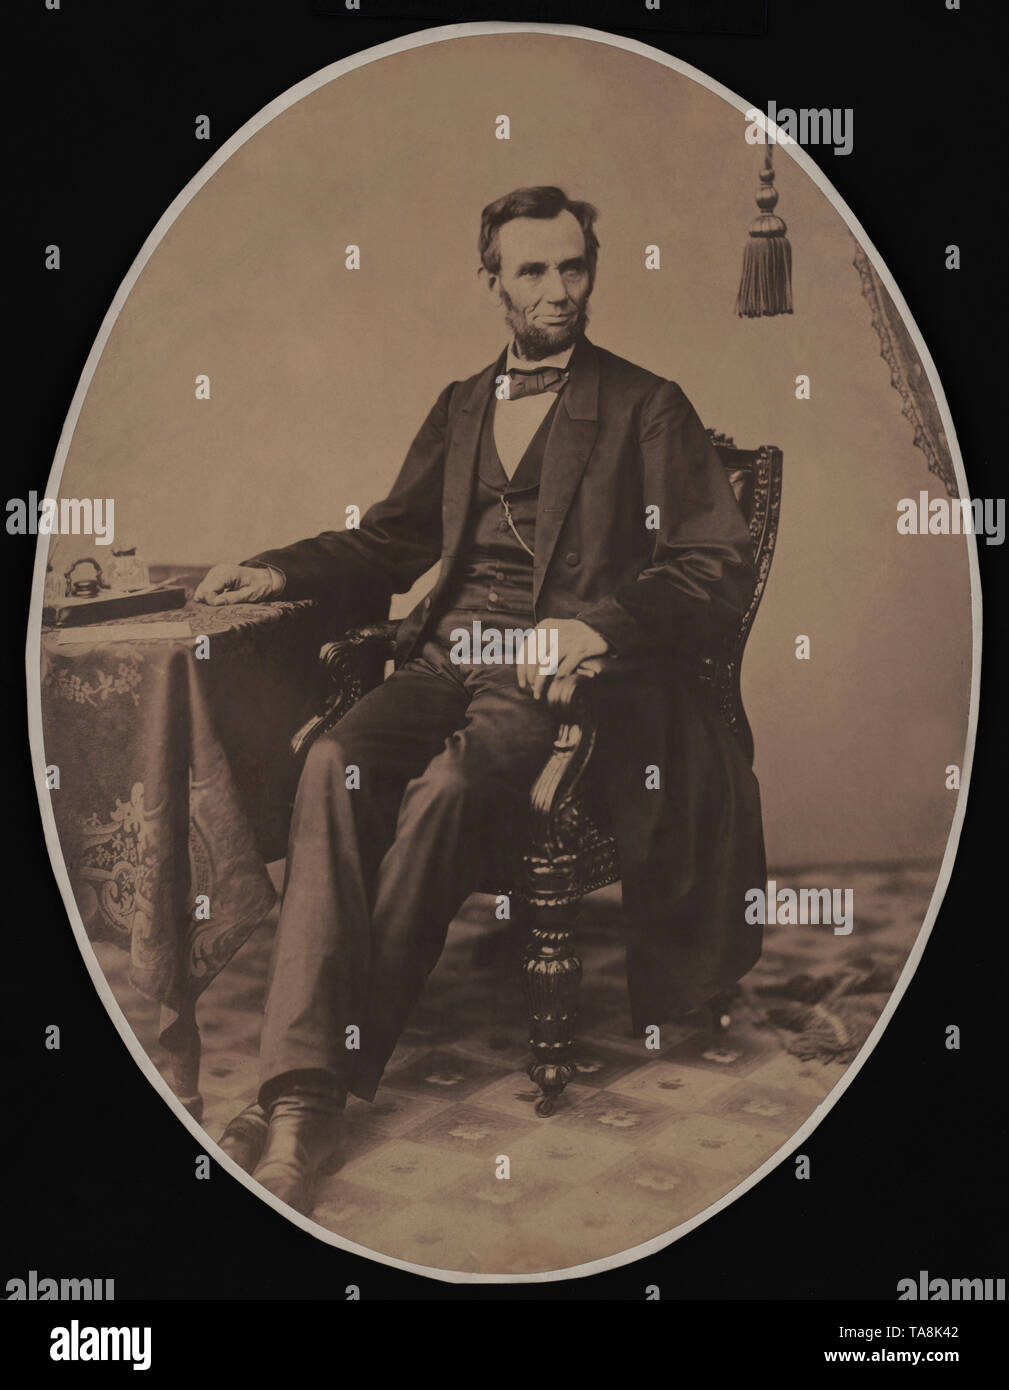 Un Portrait d'Abraham Lincoln assis, Washington DC, USA, photo de Alexander Gardner, le 8 novembre 1863 Banque D'Images